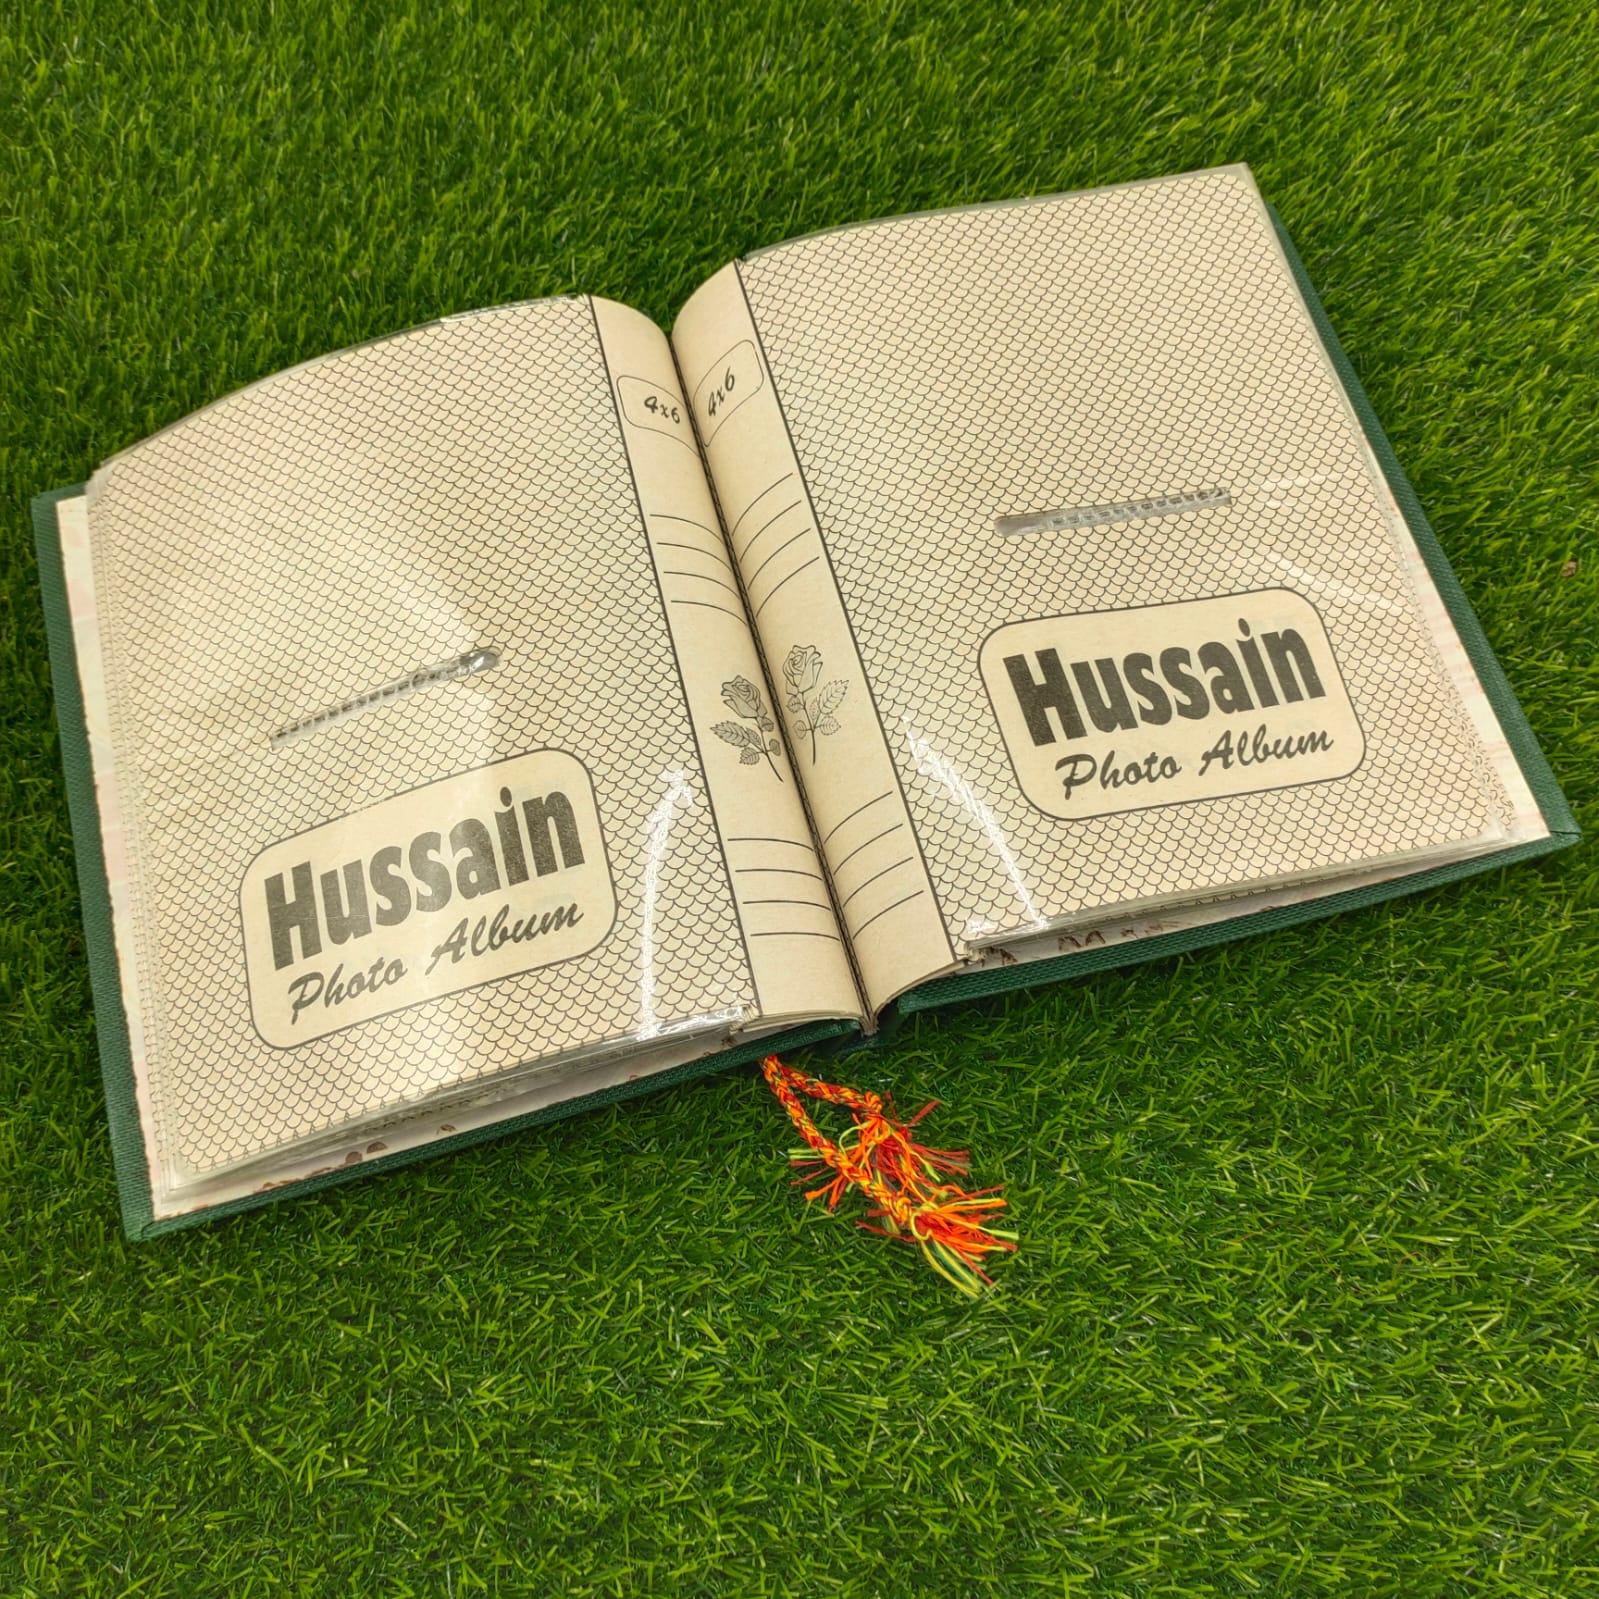 hussain photo album